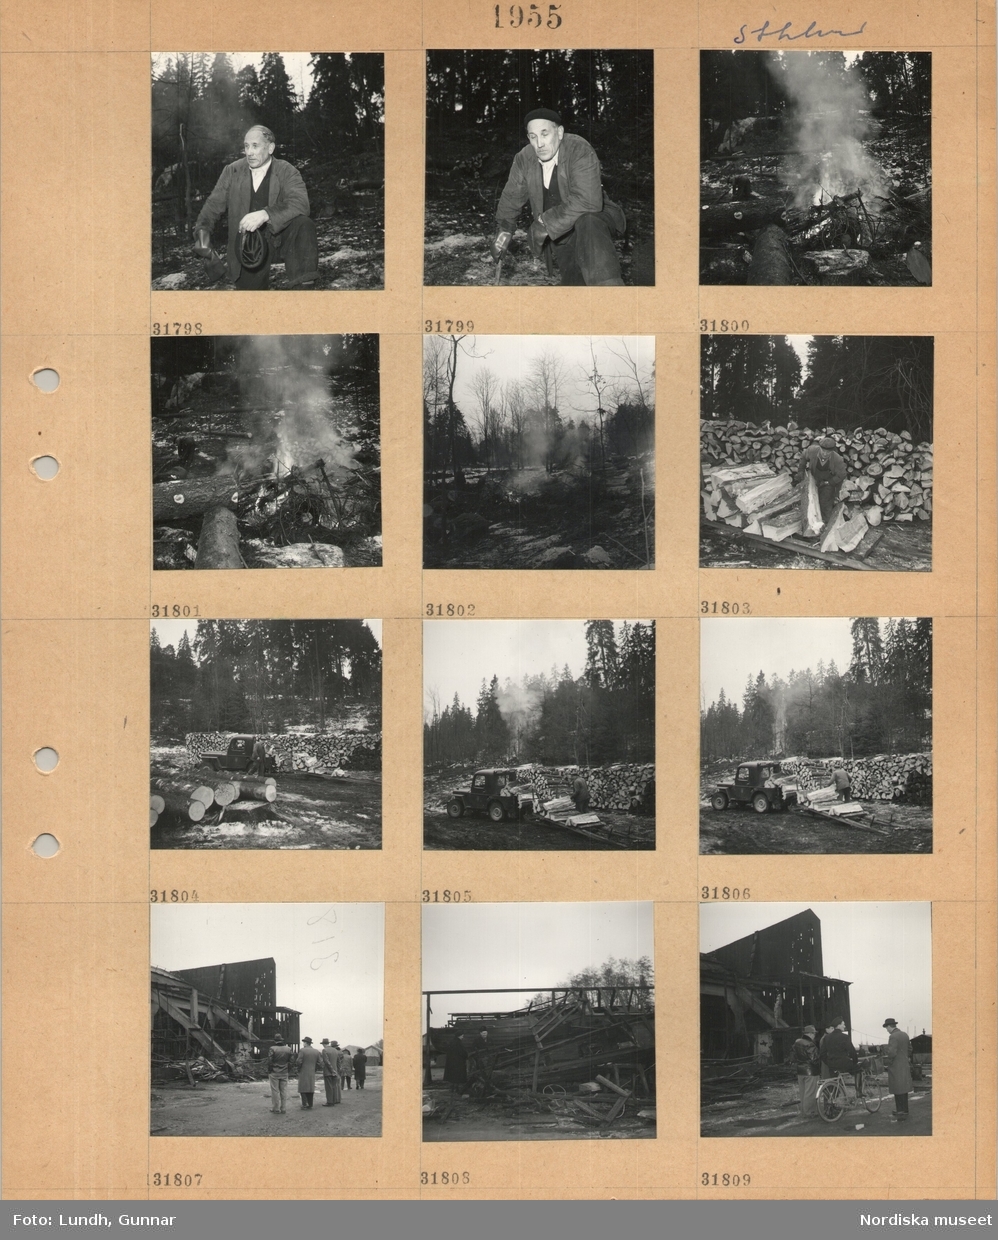 Motiv: Sthlm (Stockholm) ;
Porträtt av en man i en skog, en hög med granar brinner, en man staplar timmerstockar, en grupp män vid en byggnad troligen efter en brand.